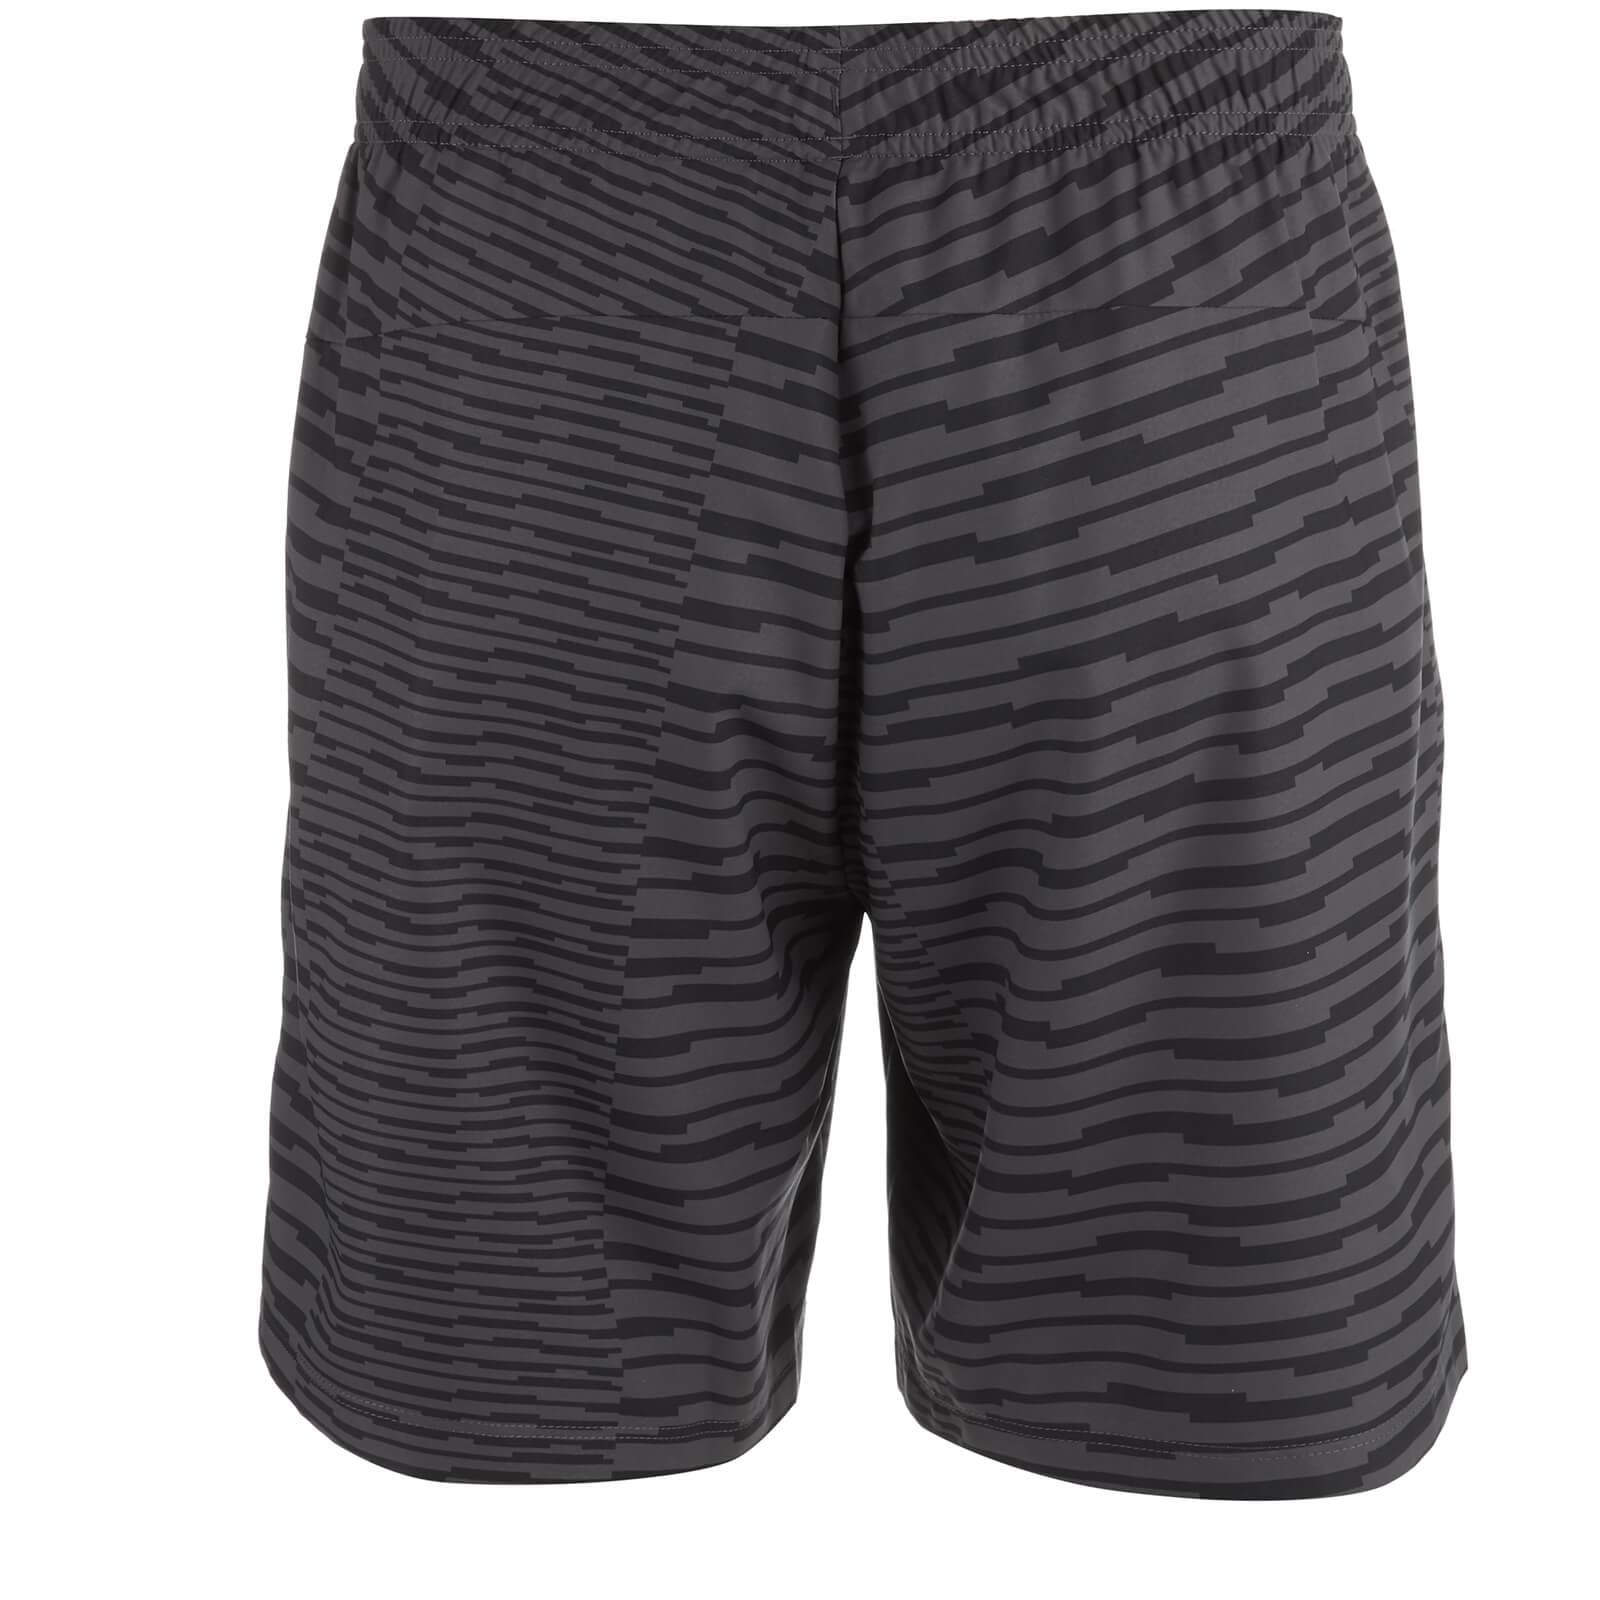 Asics Fuzex Print 7 Inch Run Shorts in Grey (Gray) for Men - Lyst